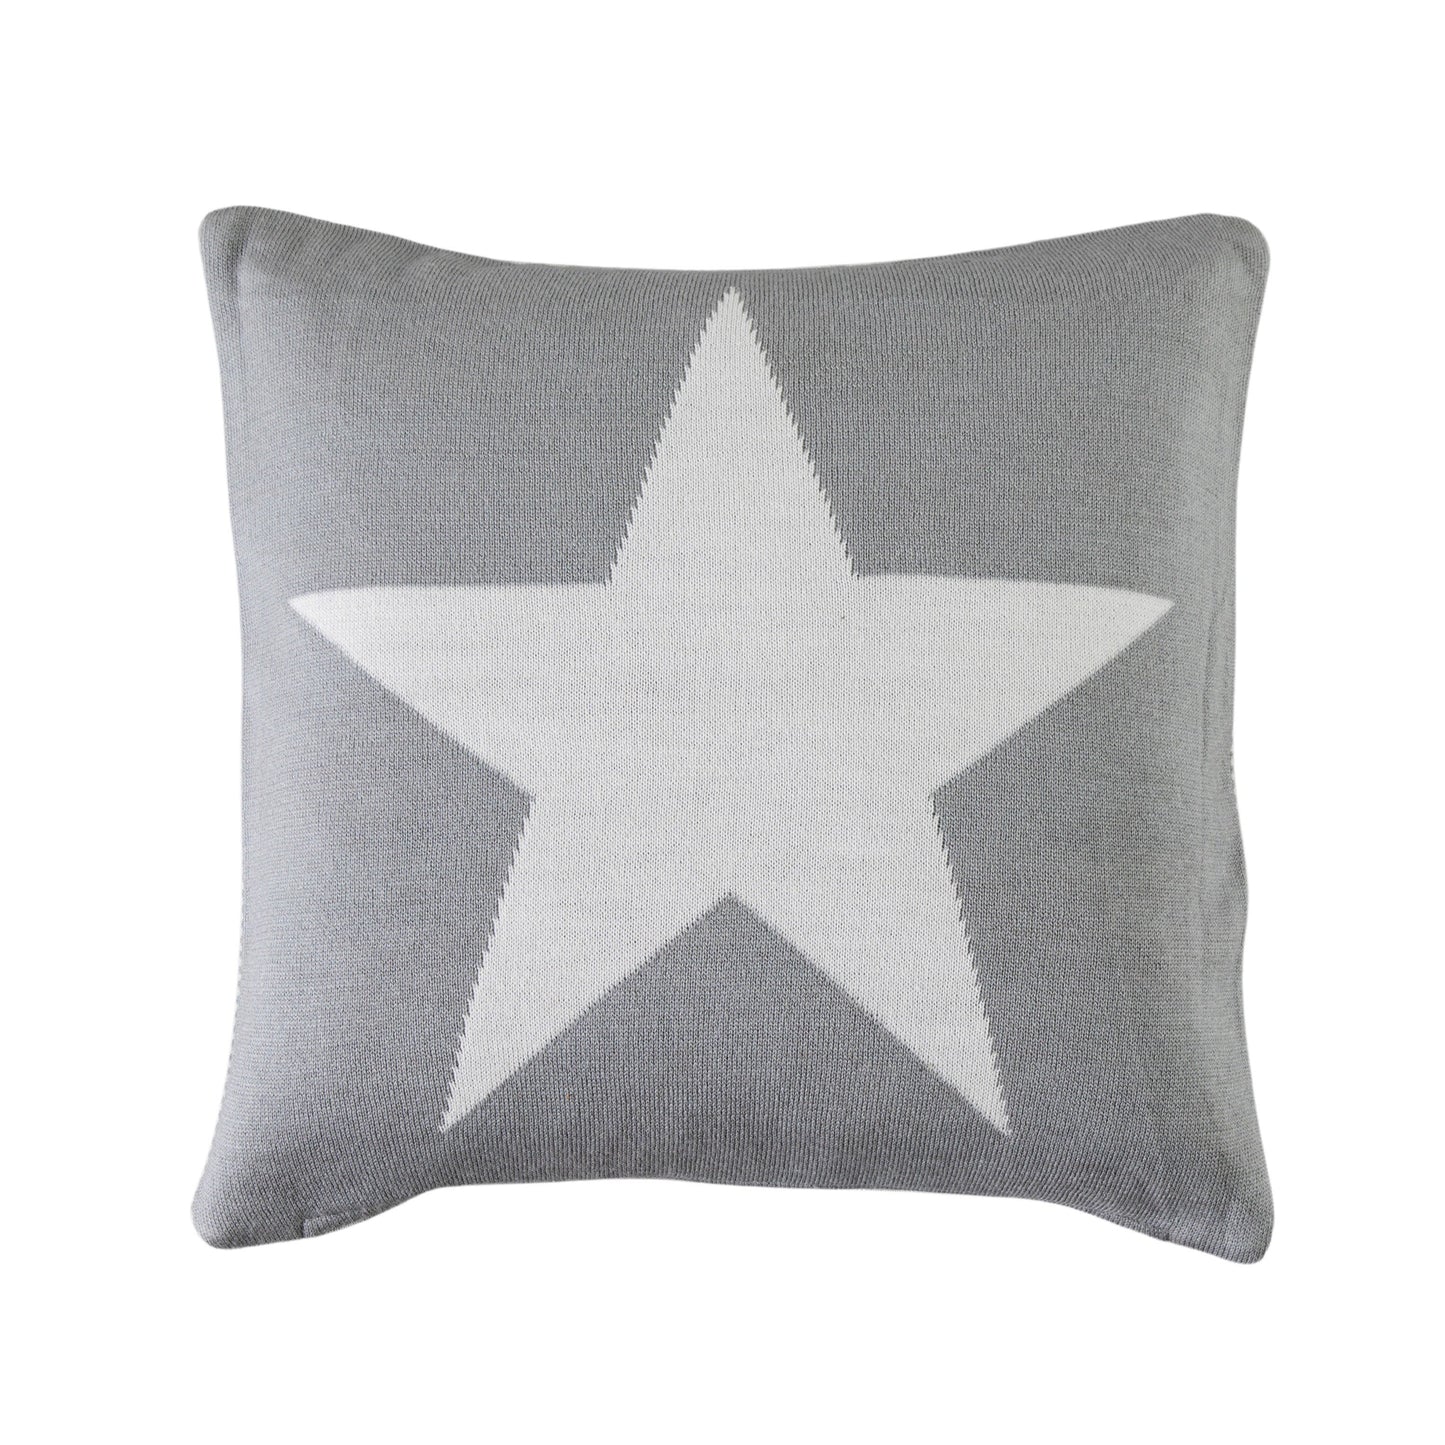 Star Knitted Cushion Grey 450x450mm